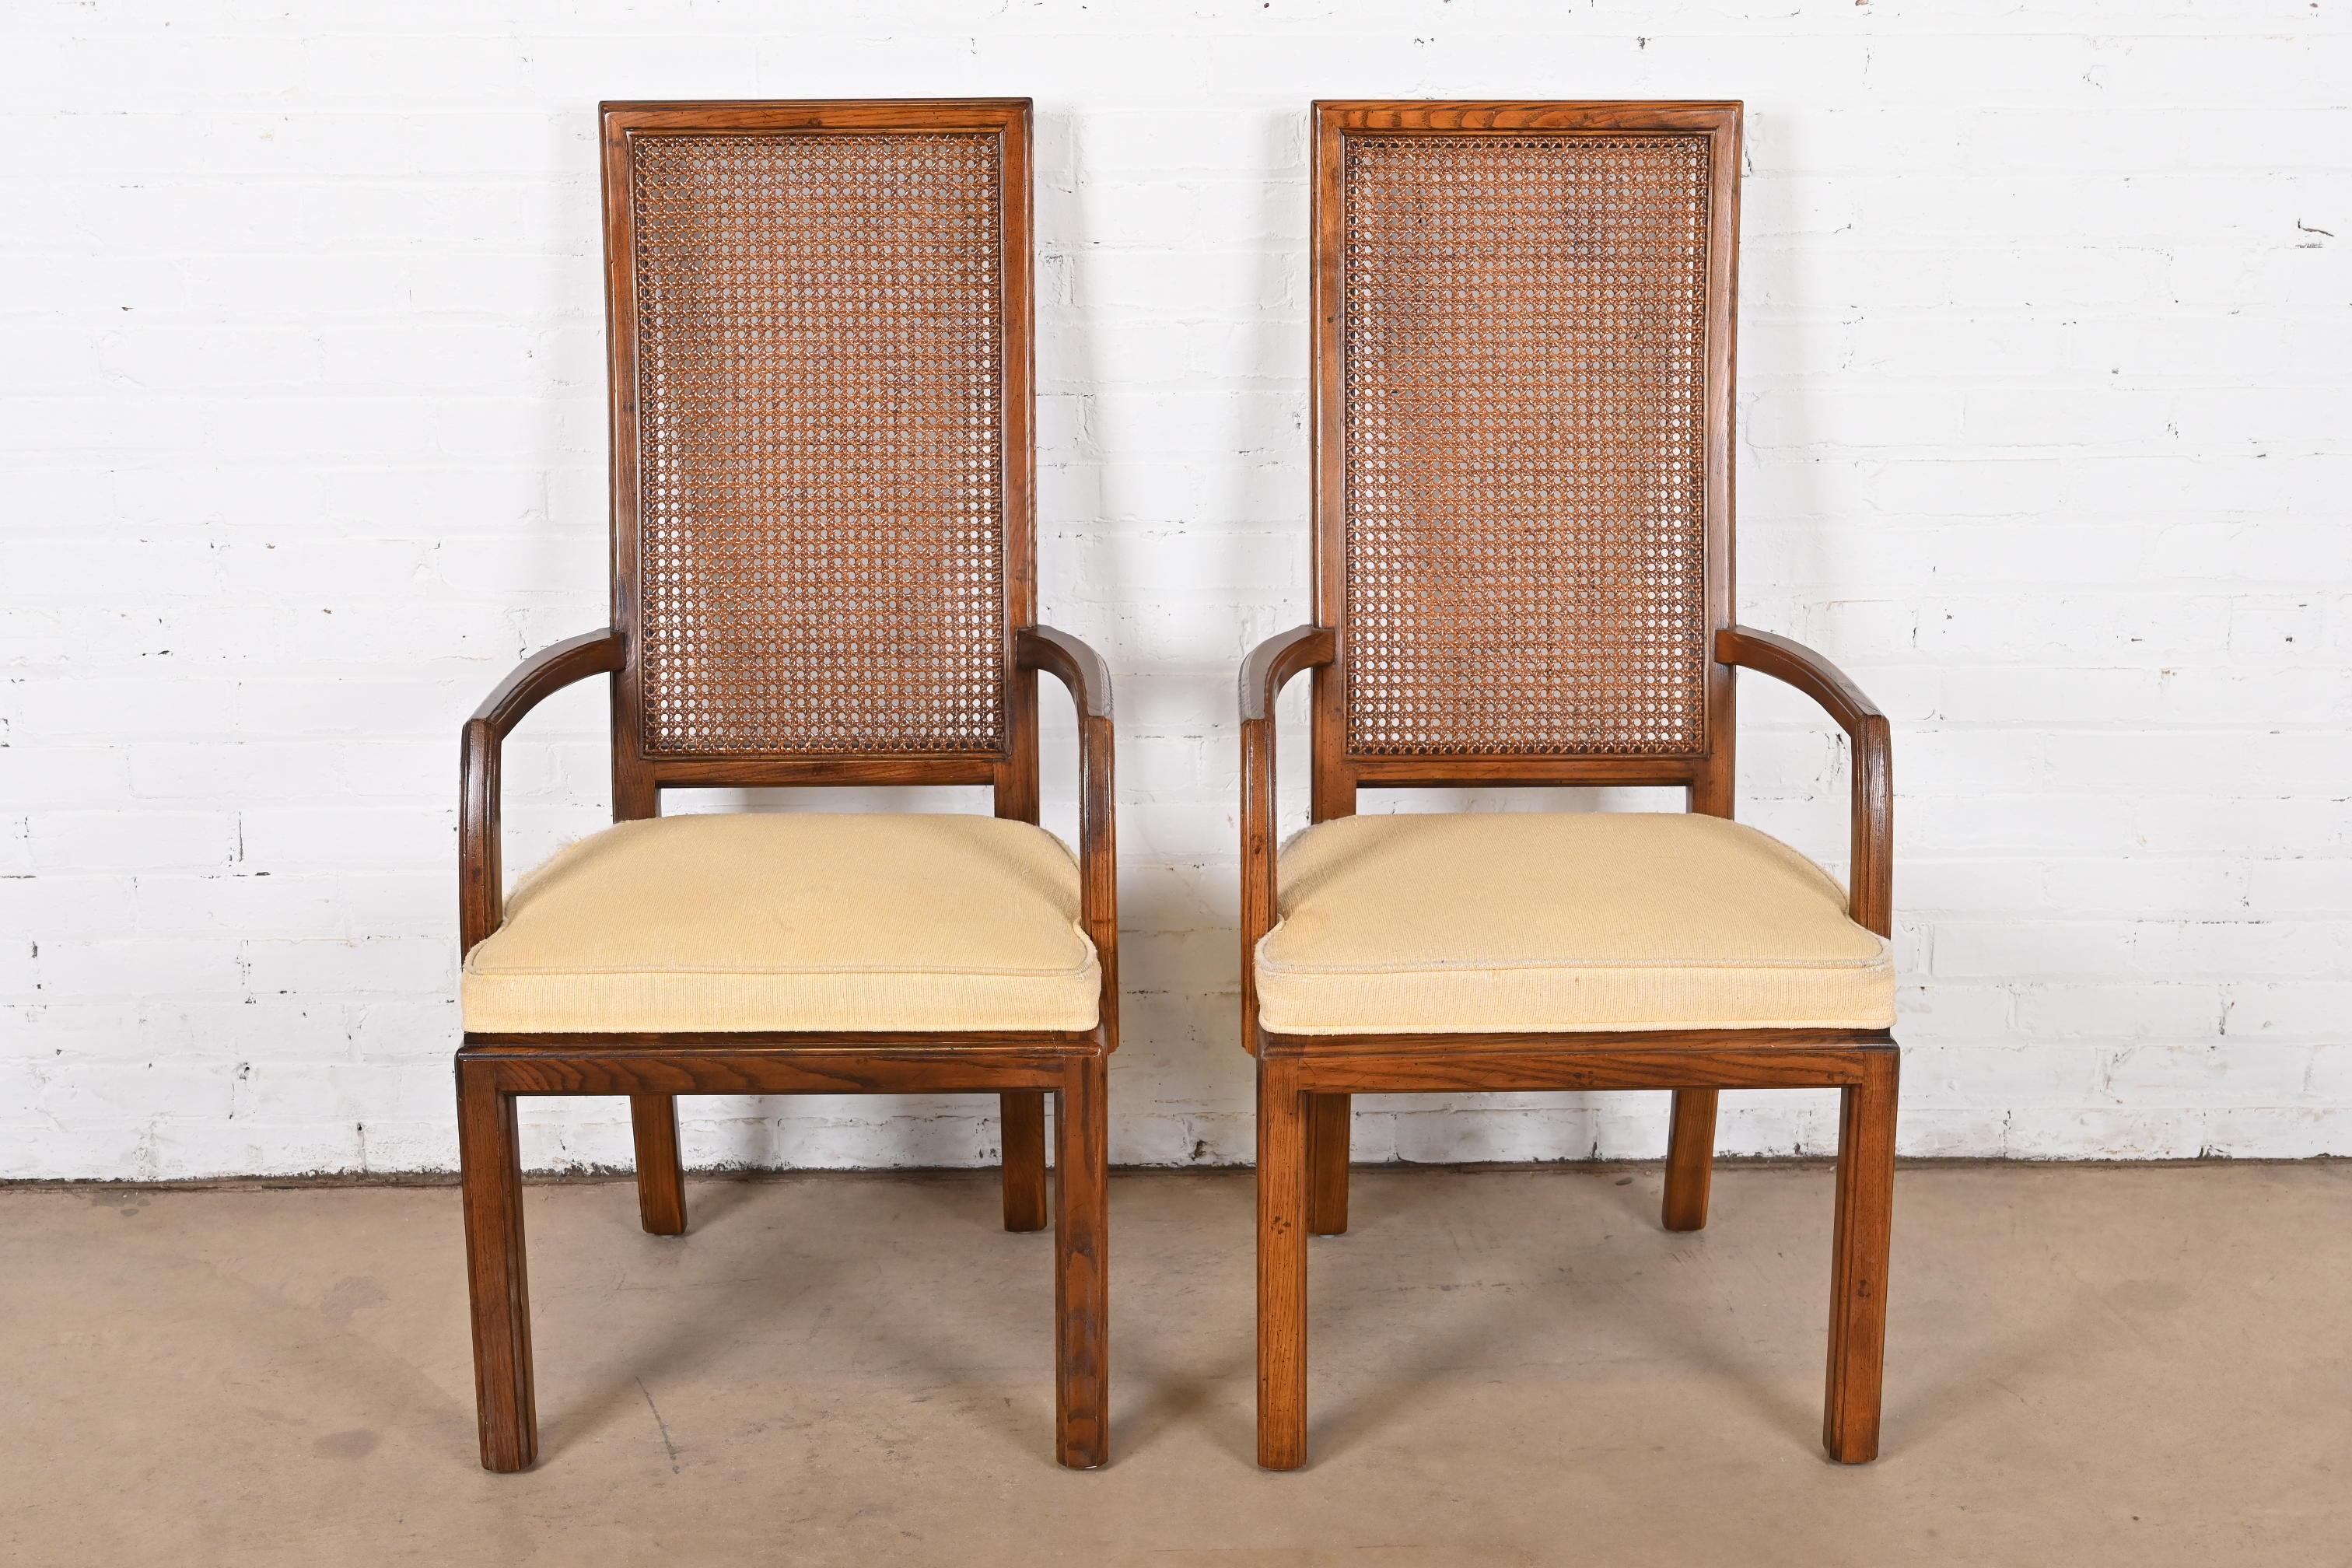 Magnifique paire de fauteuils de salle à manger à haut dossier de style moderne du milieu du siècle dernier.

Par Henredon

USA, Circa 1970s

Piétements en chêne, dossiers en rotin et sièges rembourrés.

Dimensions : 22 